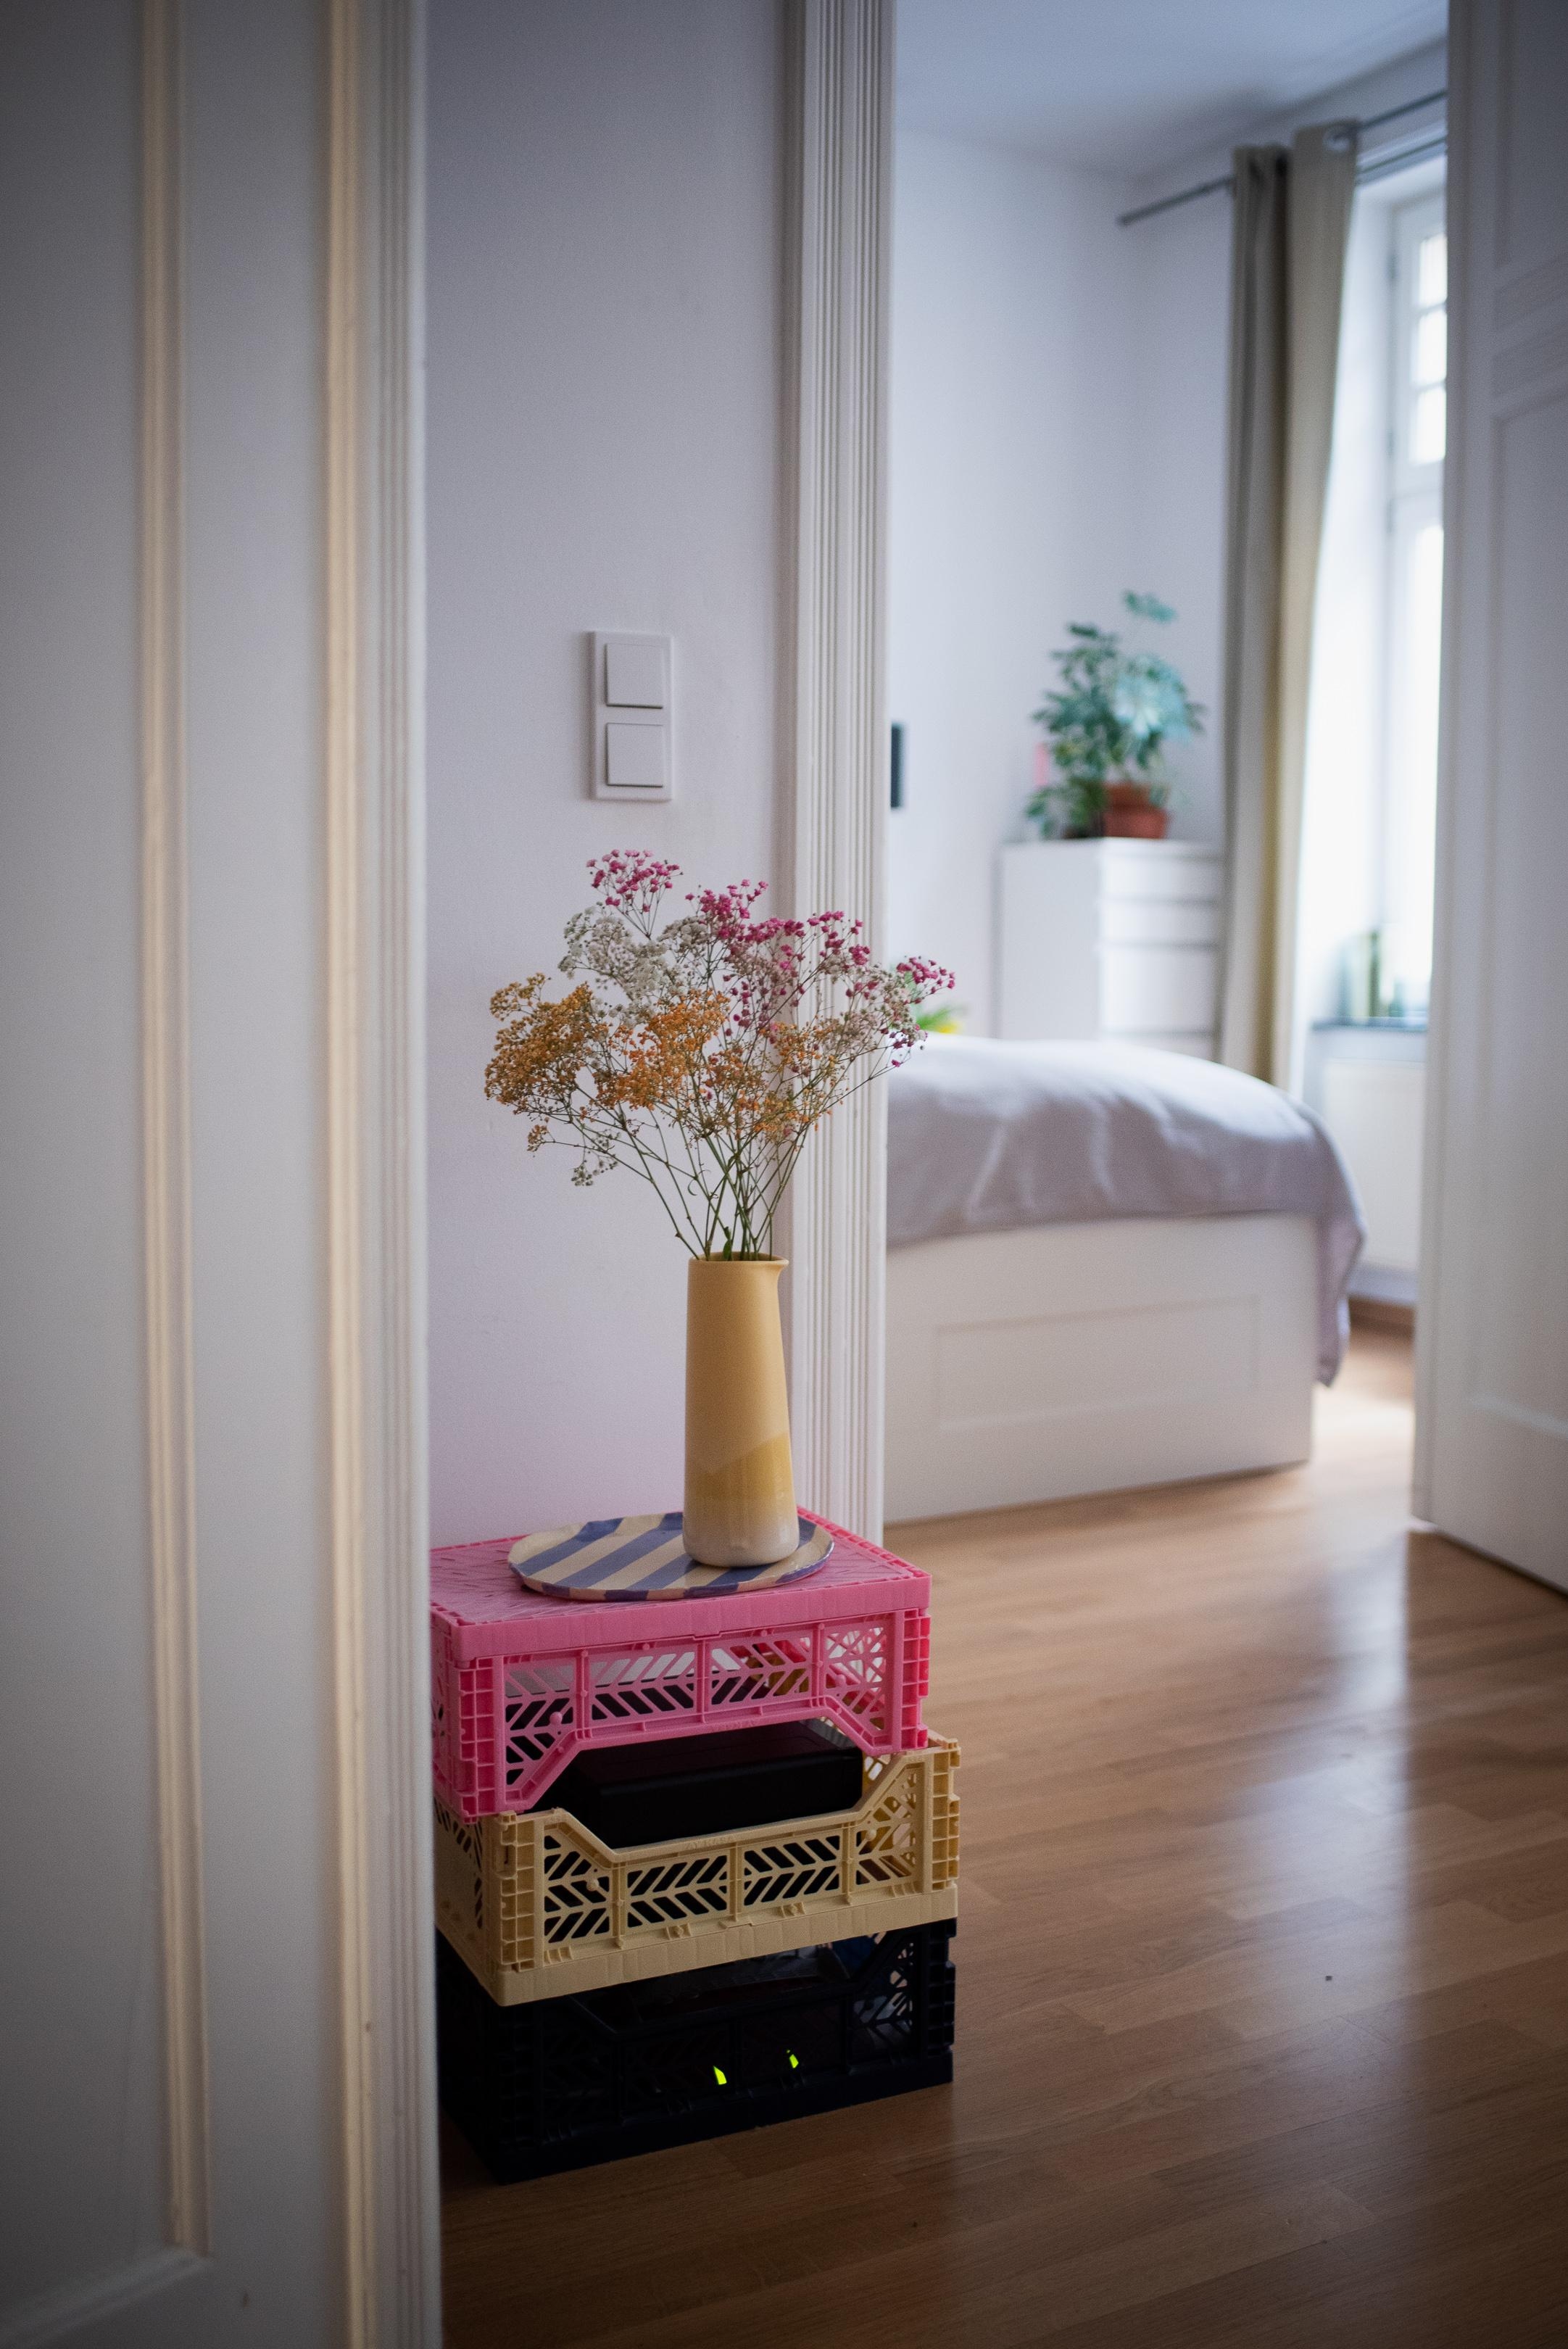 Der Frühling kommt! #vase #blumen #schlafzimmer #deko #interiorinspo